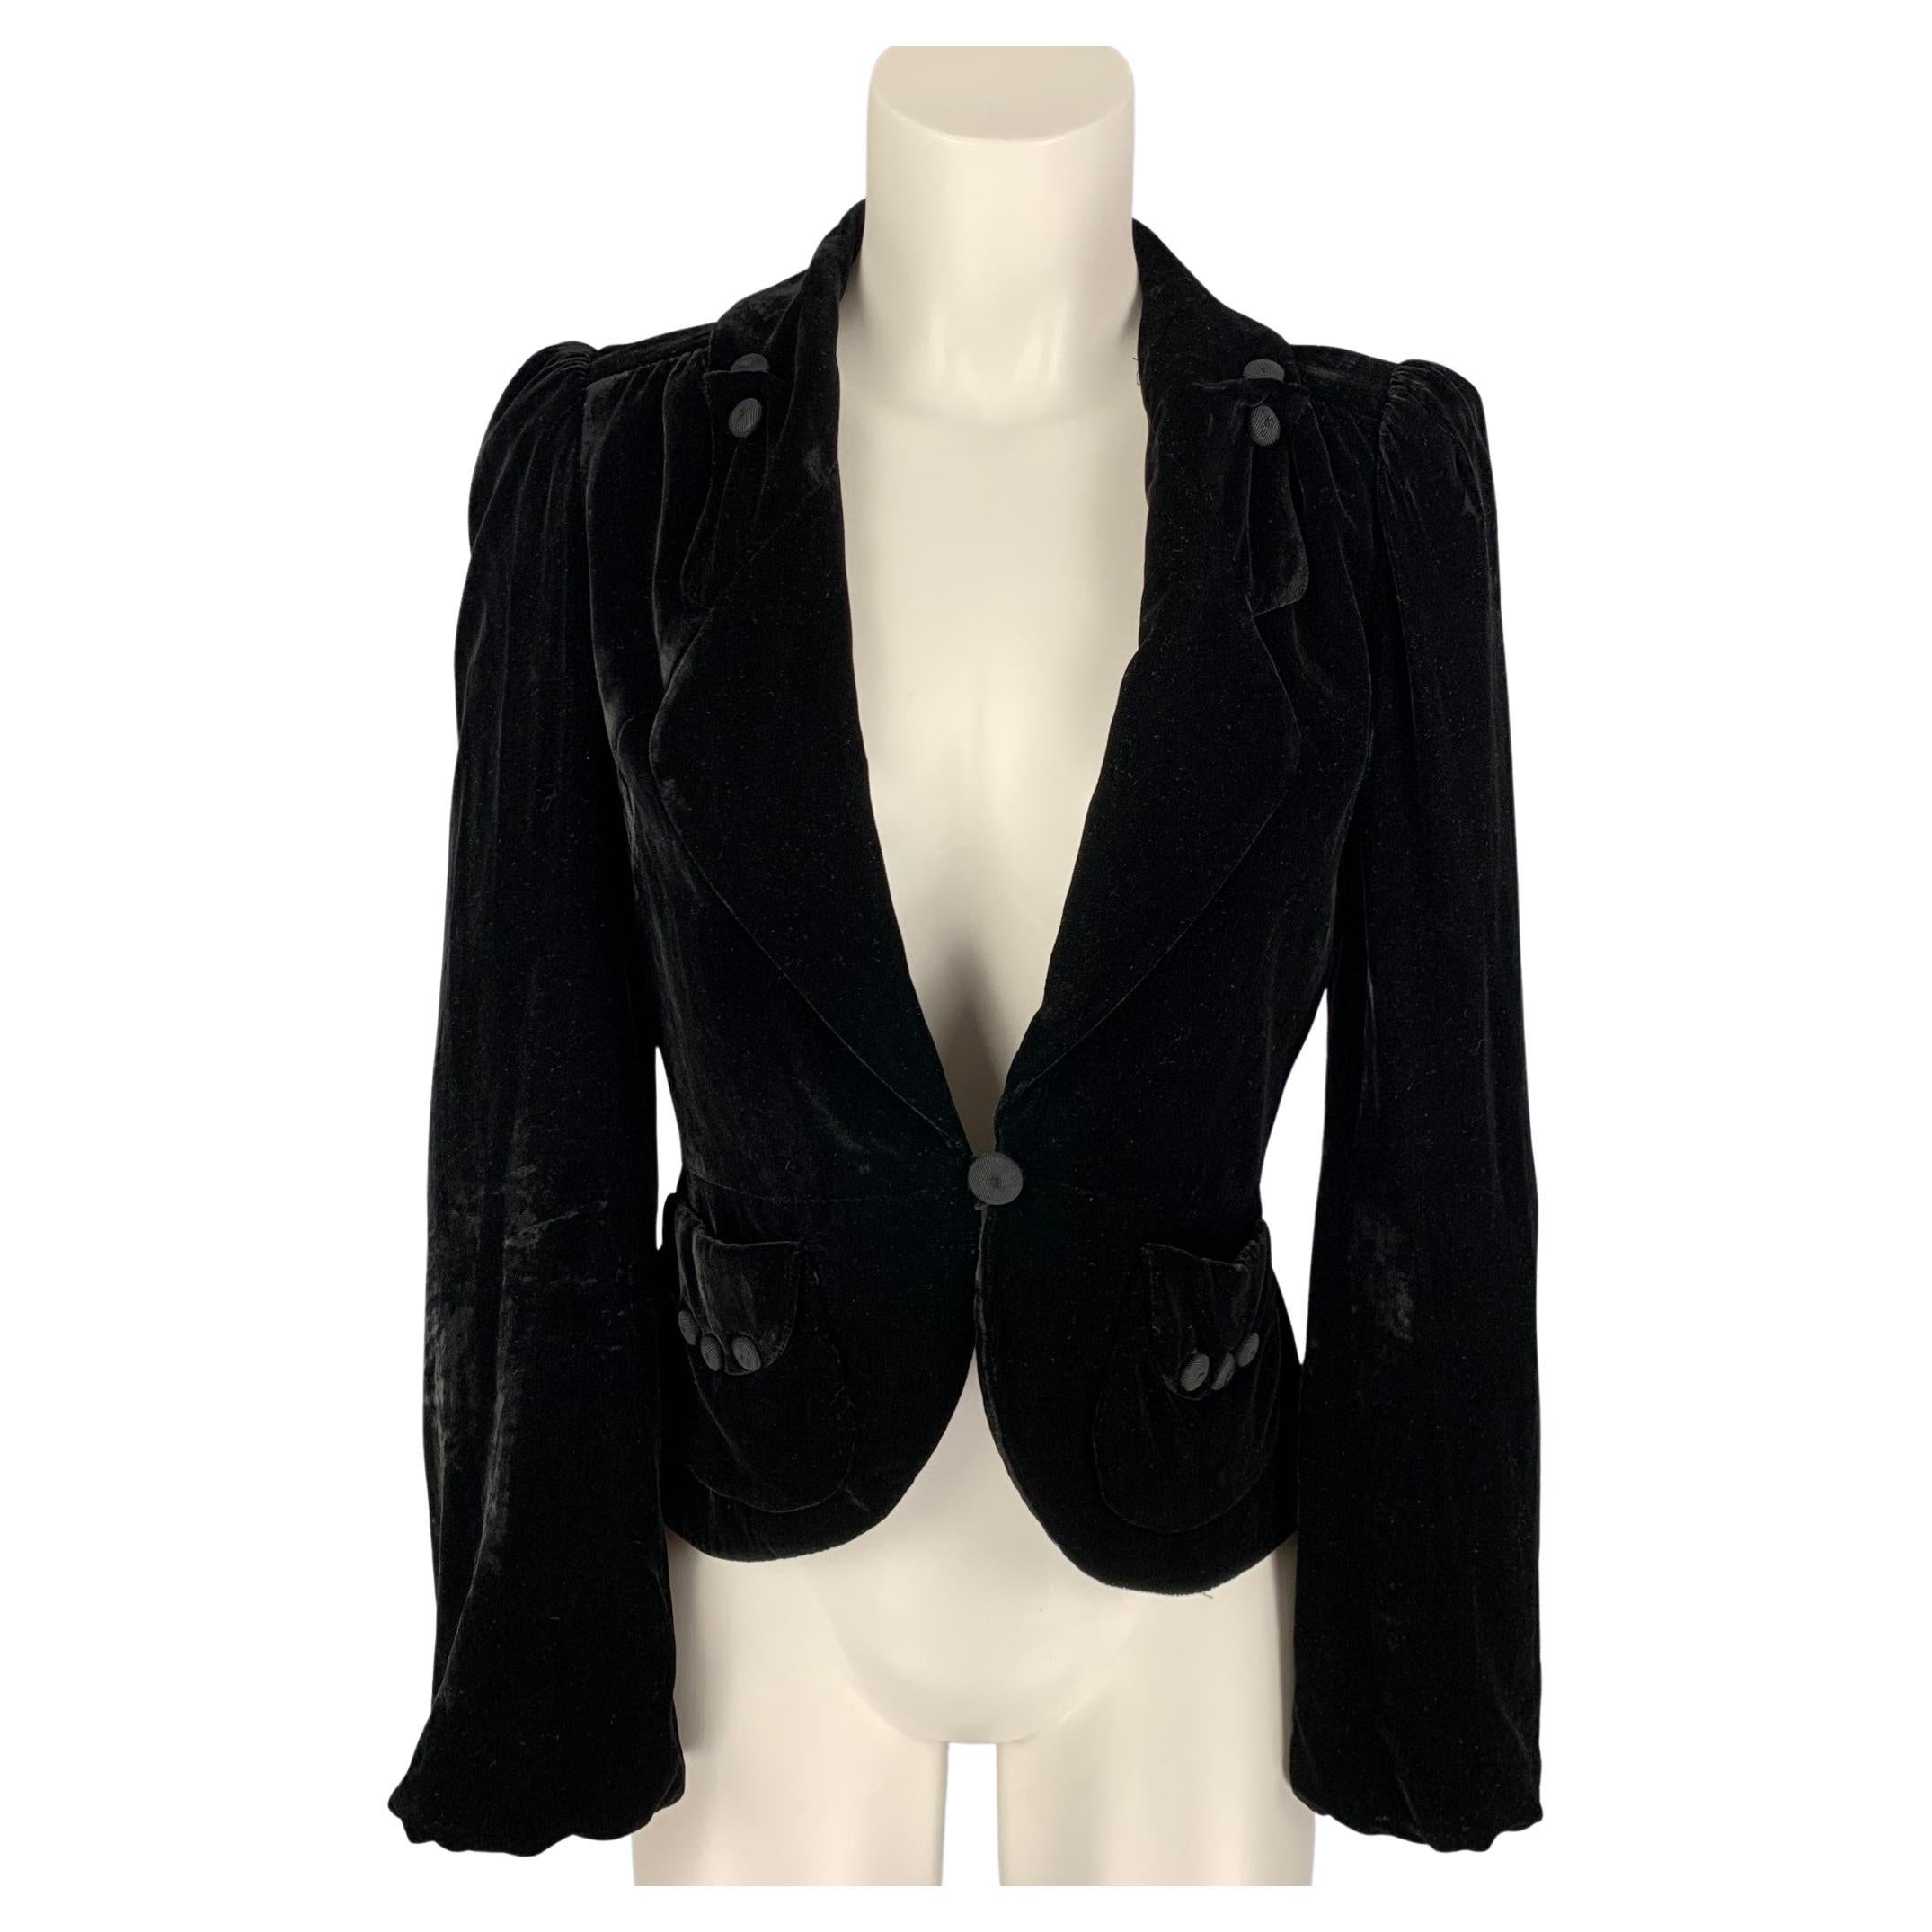 MARC JACOBS Size 2 Black Rayon Blend Velvet Jacket